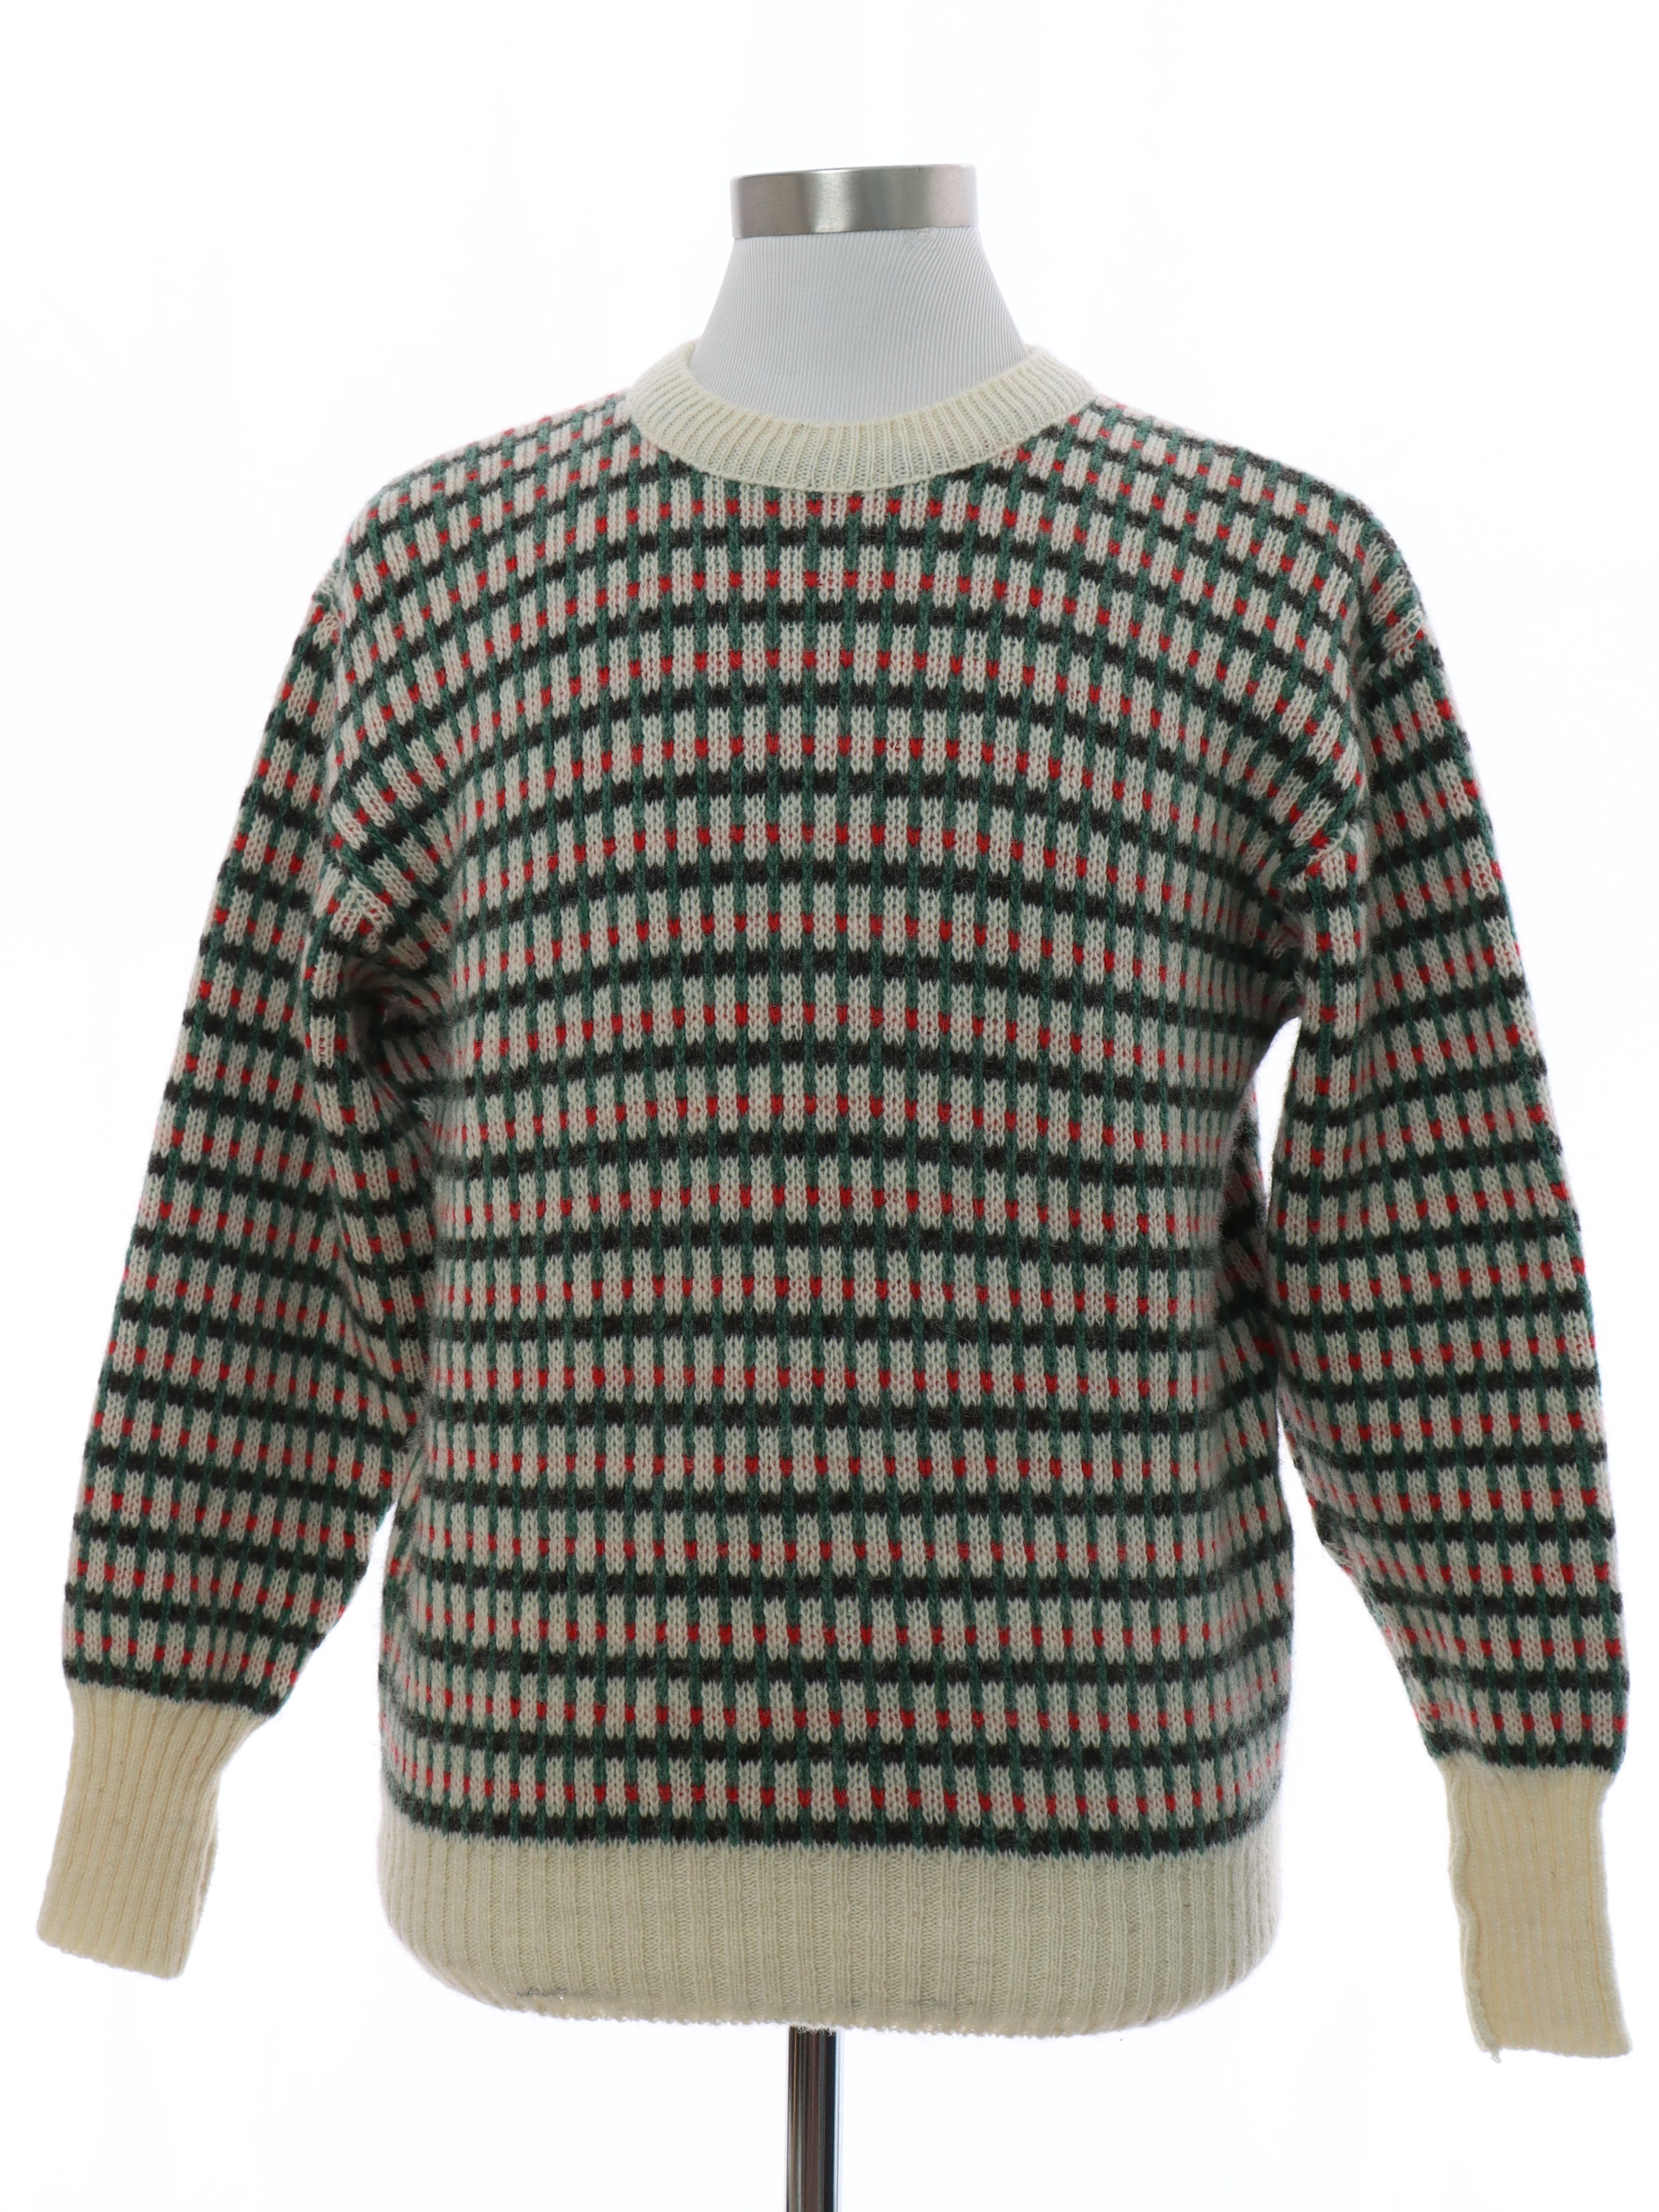 Retro 80s Sweater (Missing Label) : 80s -Missing Label- Mens cream ...